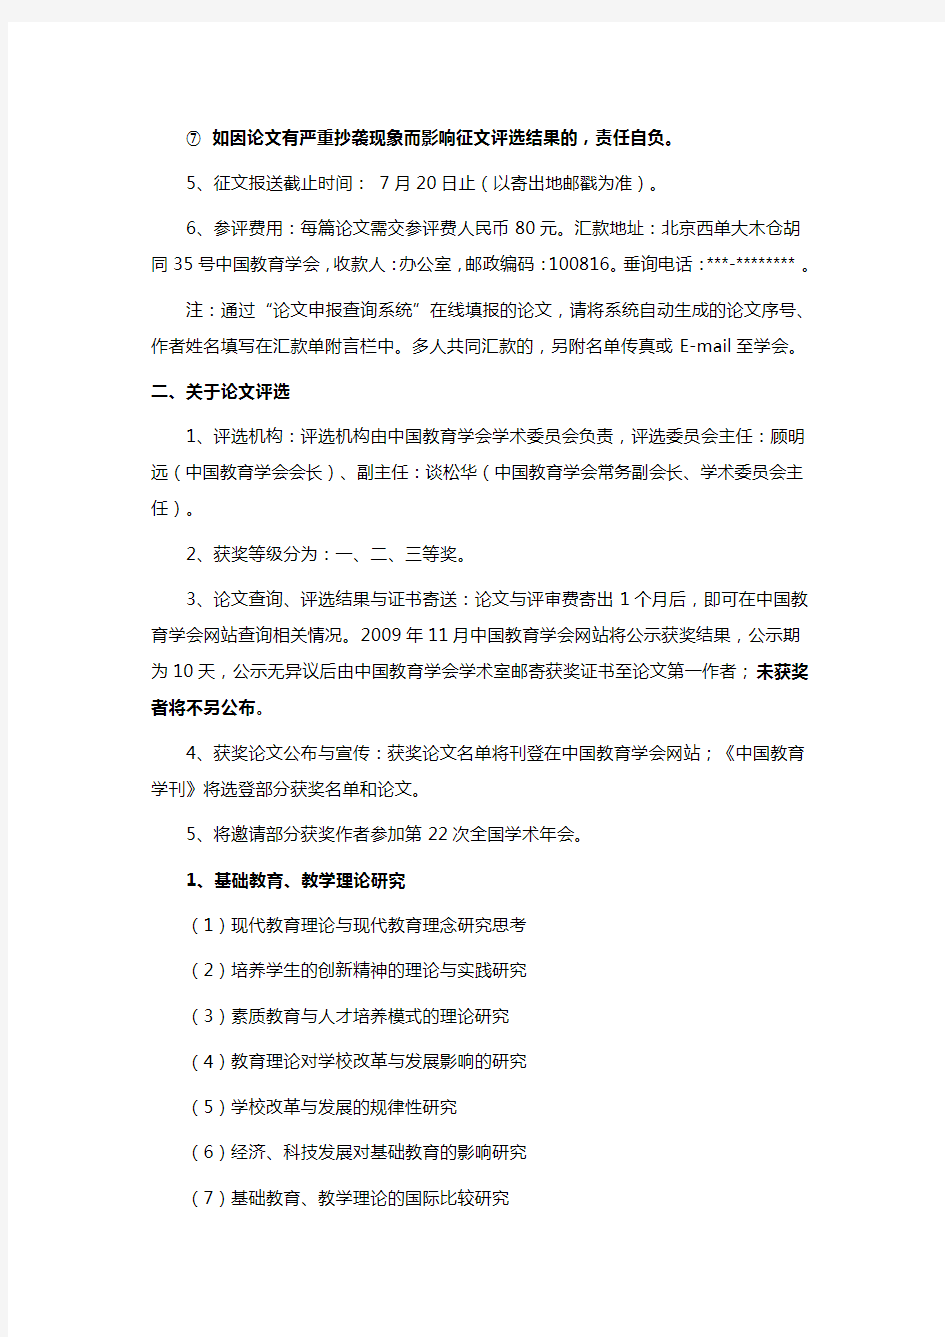 关于中国教育学会全国学术论文征集和评选活动的通知